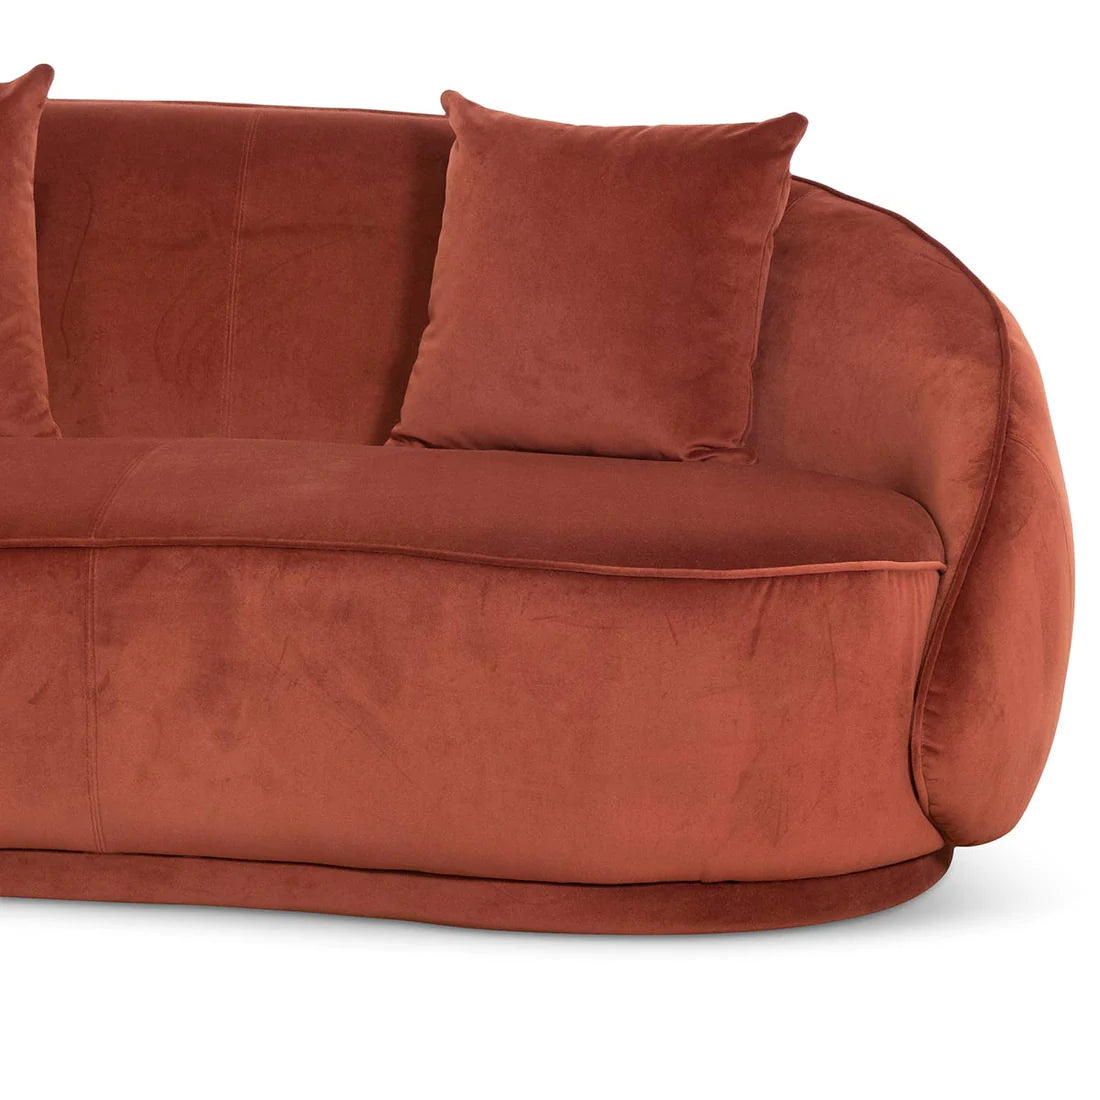 3 Seater Sofa - Rustic Orange